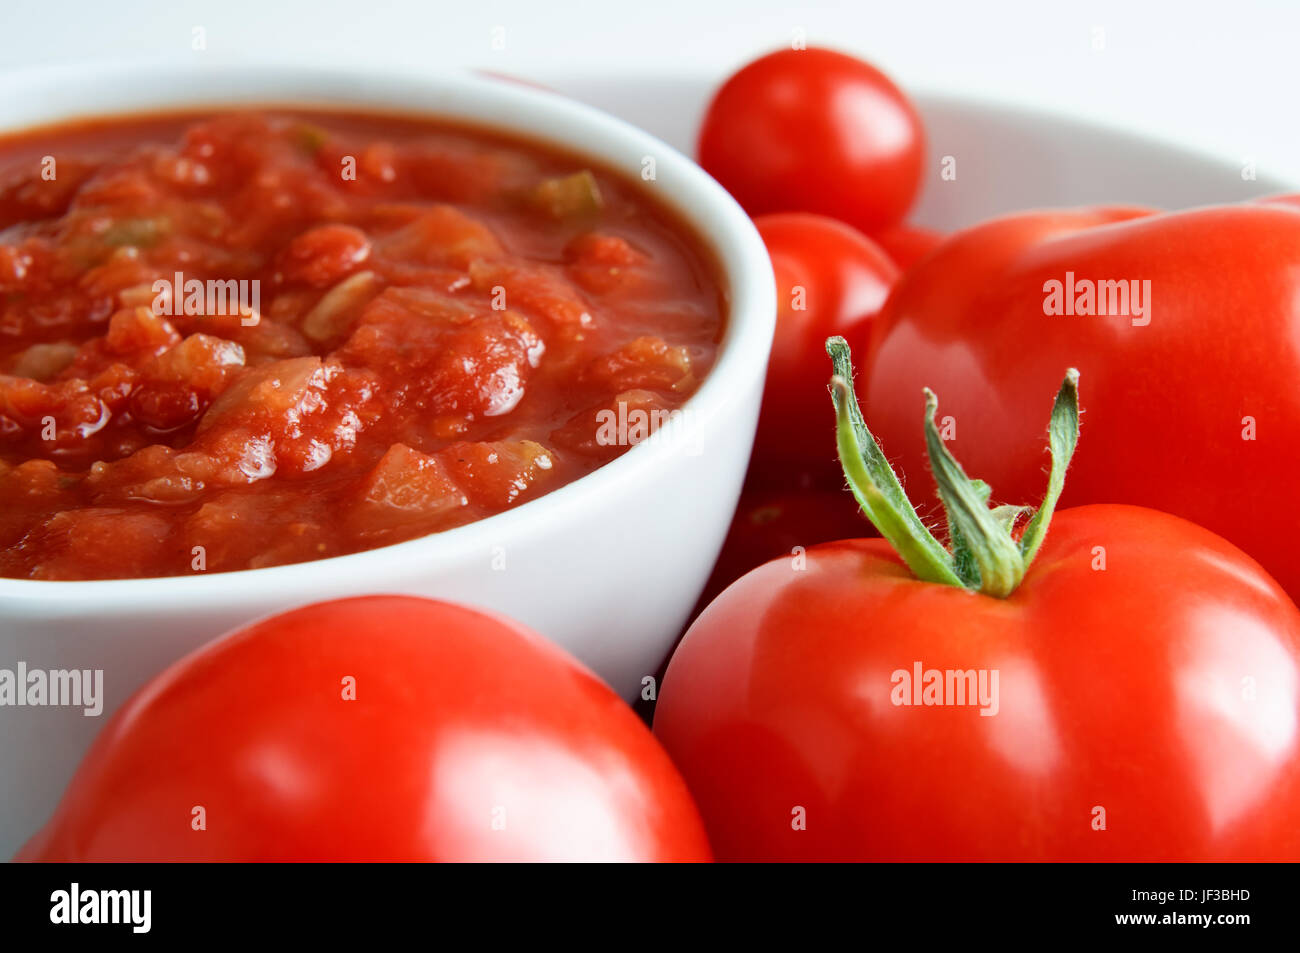 Eine weiße China Schüssel mit roter Salsa, umgeben von frischen Tomaten.  Querformat (horizontale). Stockfoto